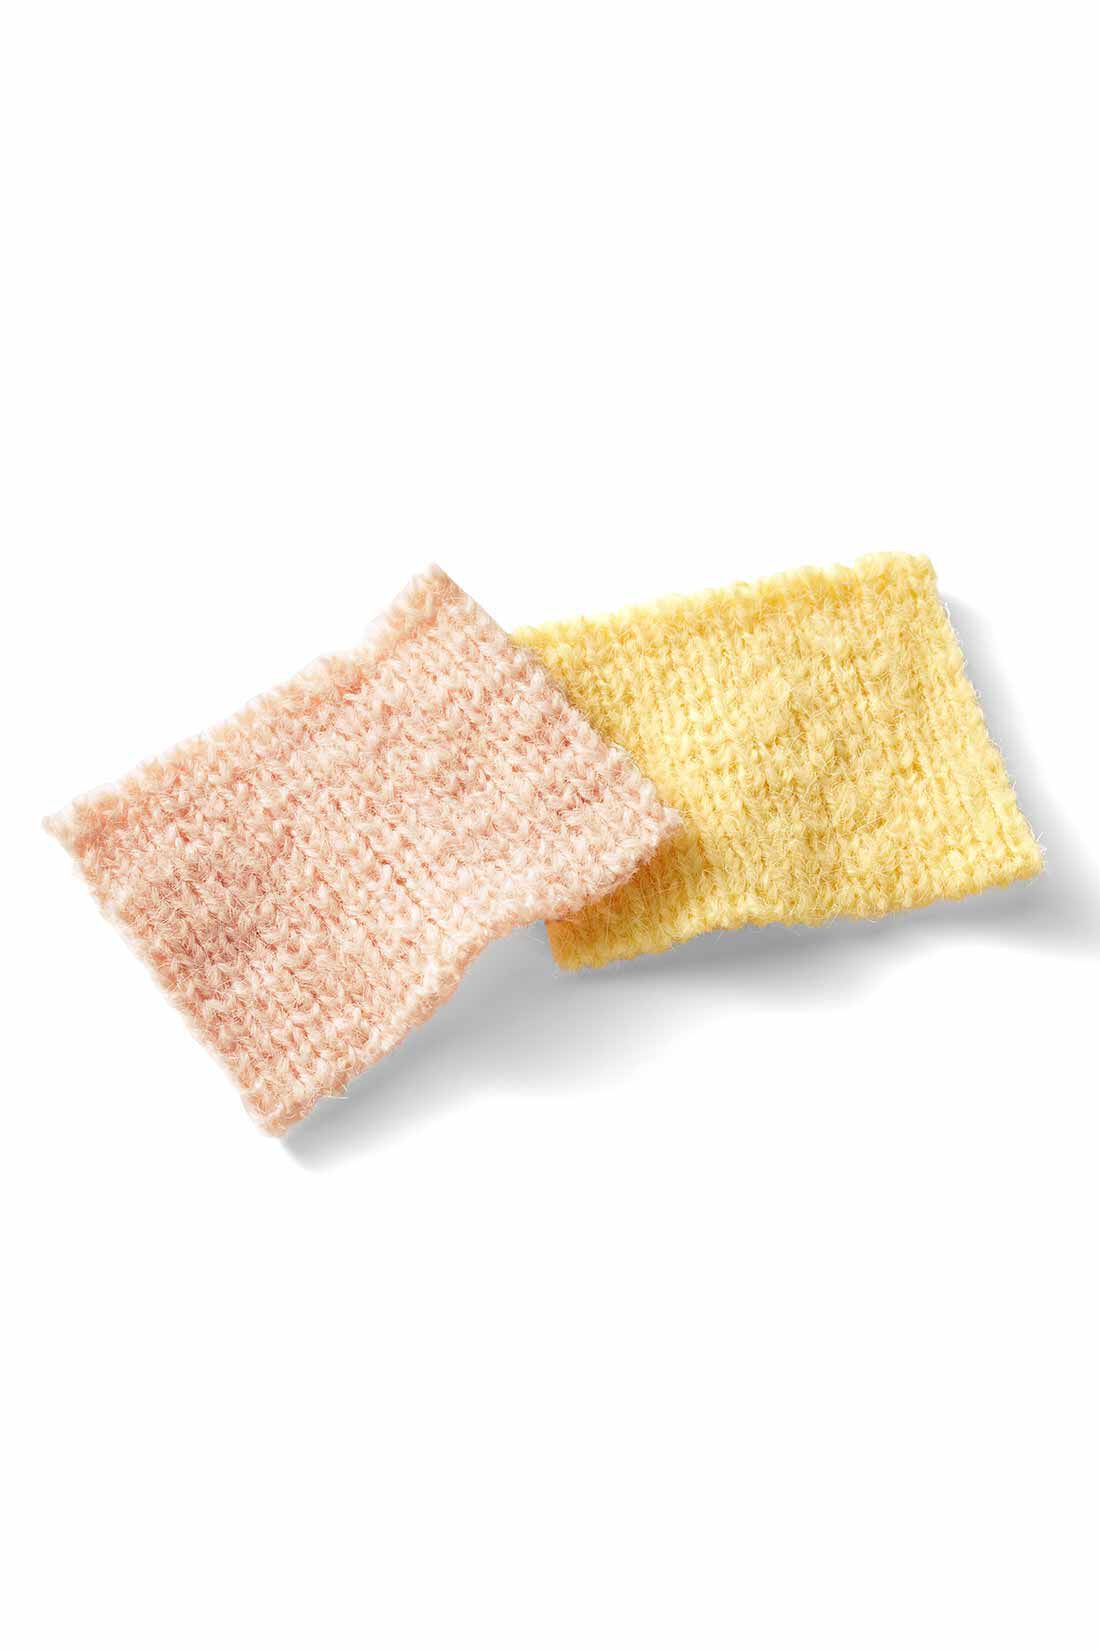 MEDE19F|MEDE19F　肩巻きニットトップスセット〈ペールピンク〉|ふんわりとした肉感のある、リサイクルポリエステル混の糸を使用。着まわしやすい、ほどよい厚みの編み地です。